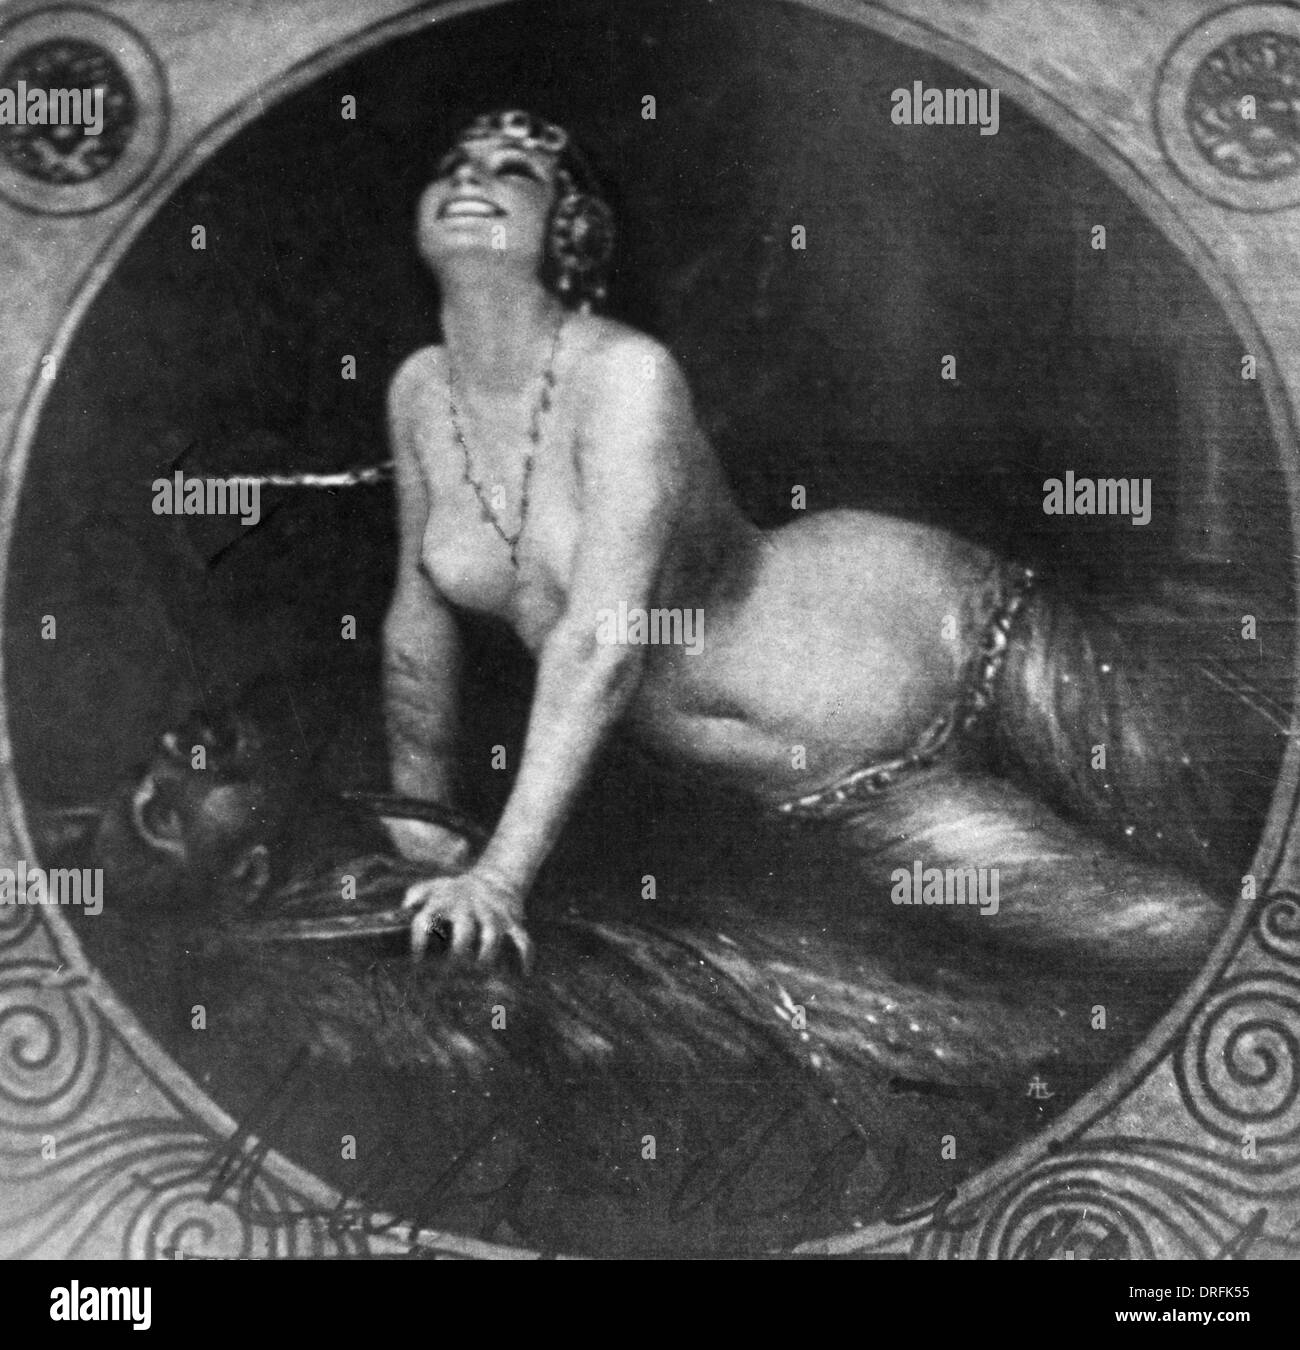 Mata Hari, dancer, courtesan and possible spy Stock Photo - Alamy